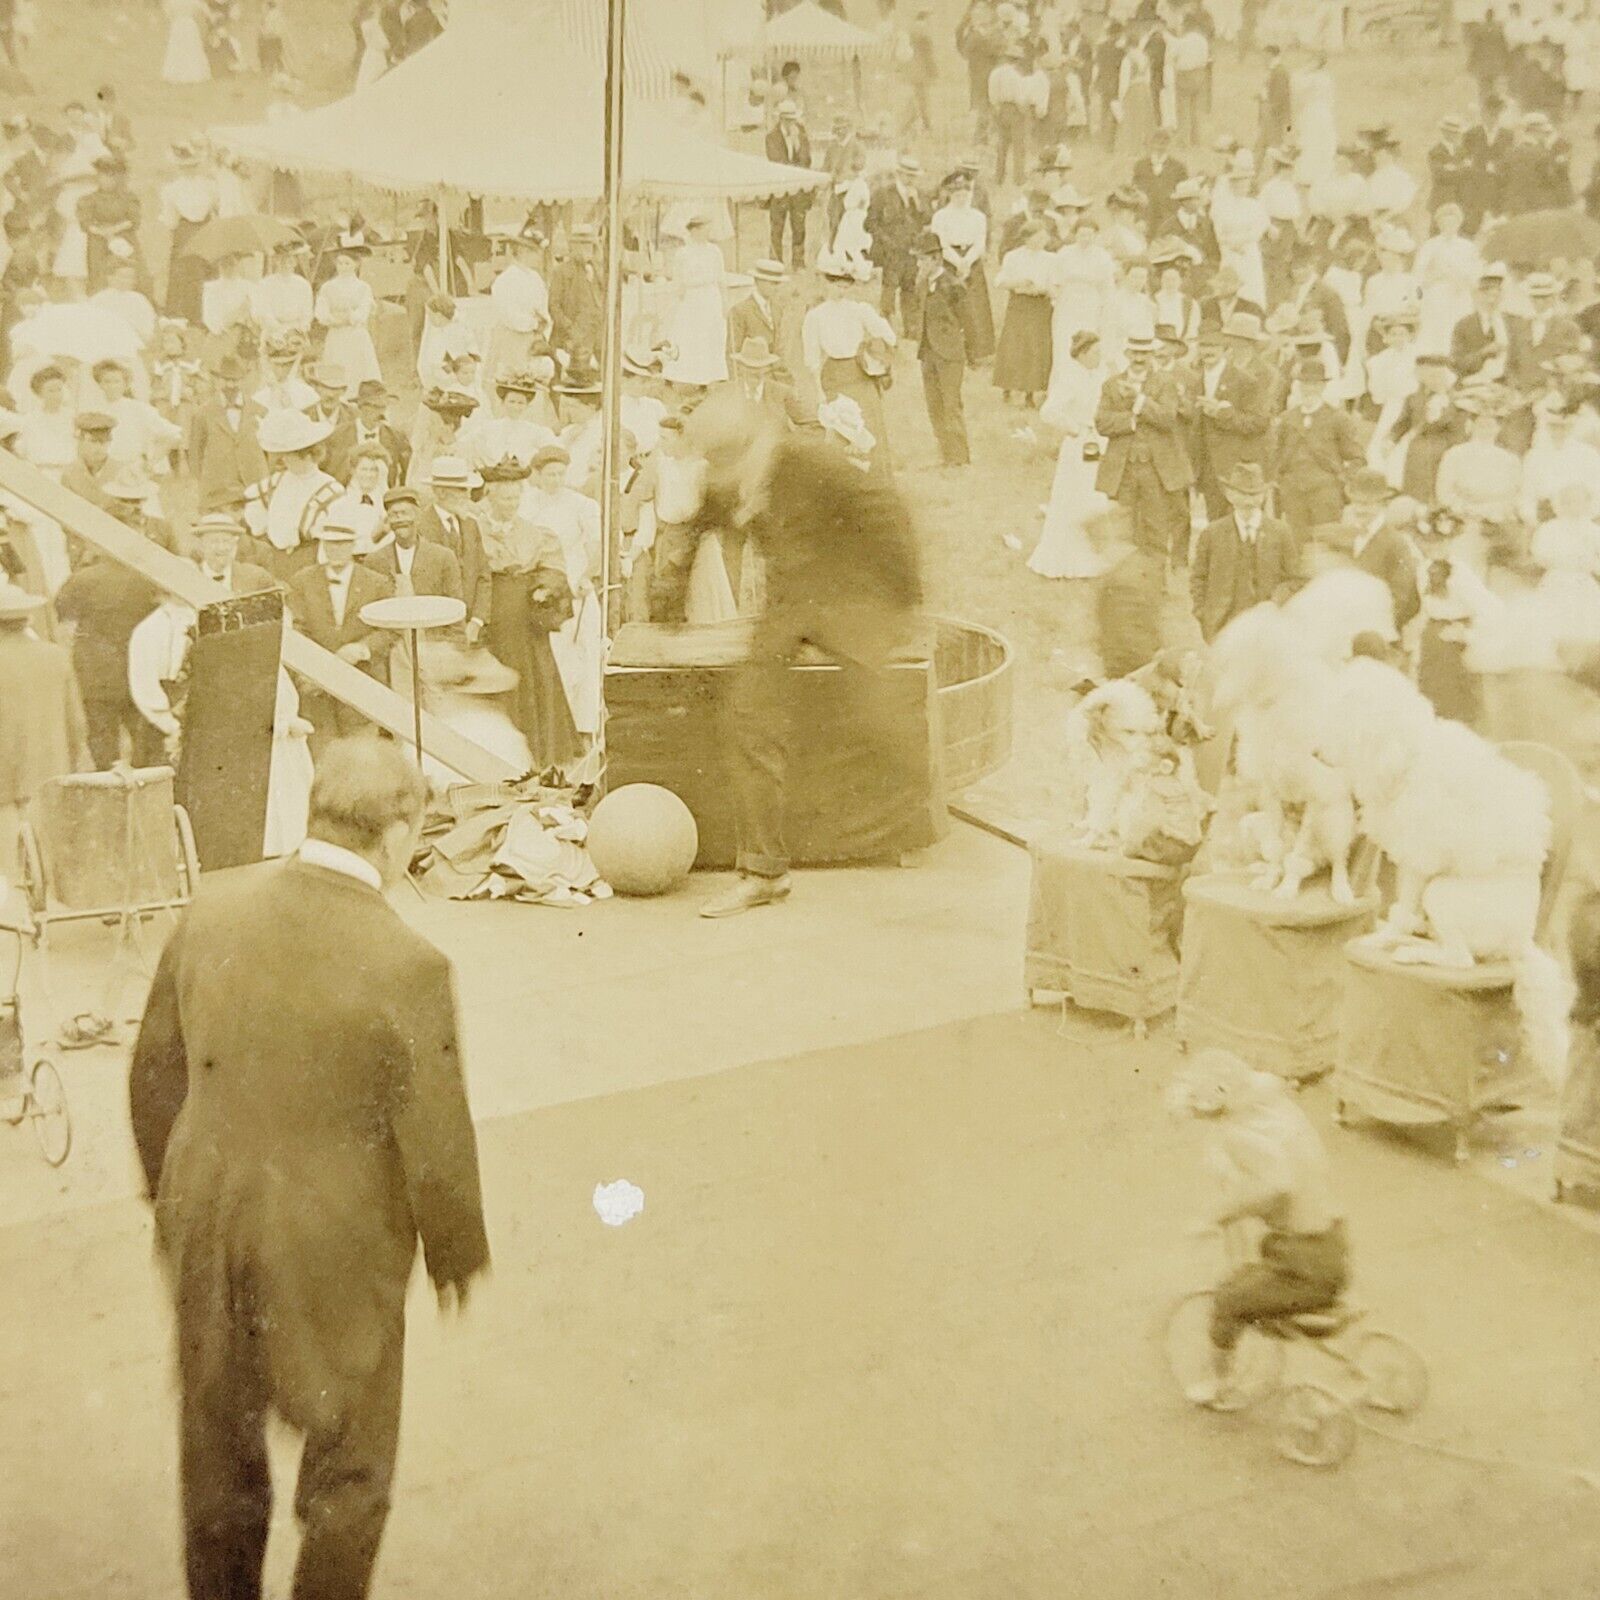 1908 Delaware County Fair Walton New York Trained Animals Monkey Dogs NY